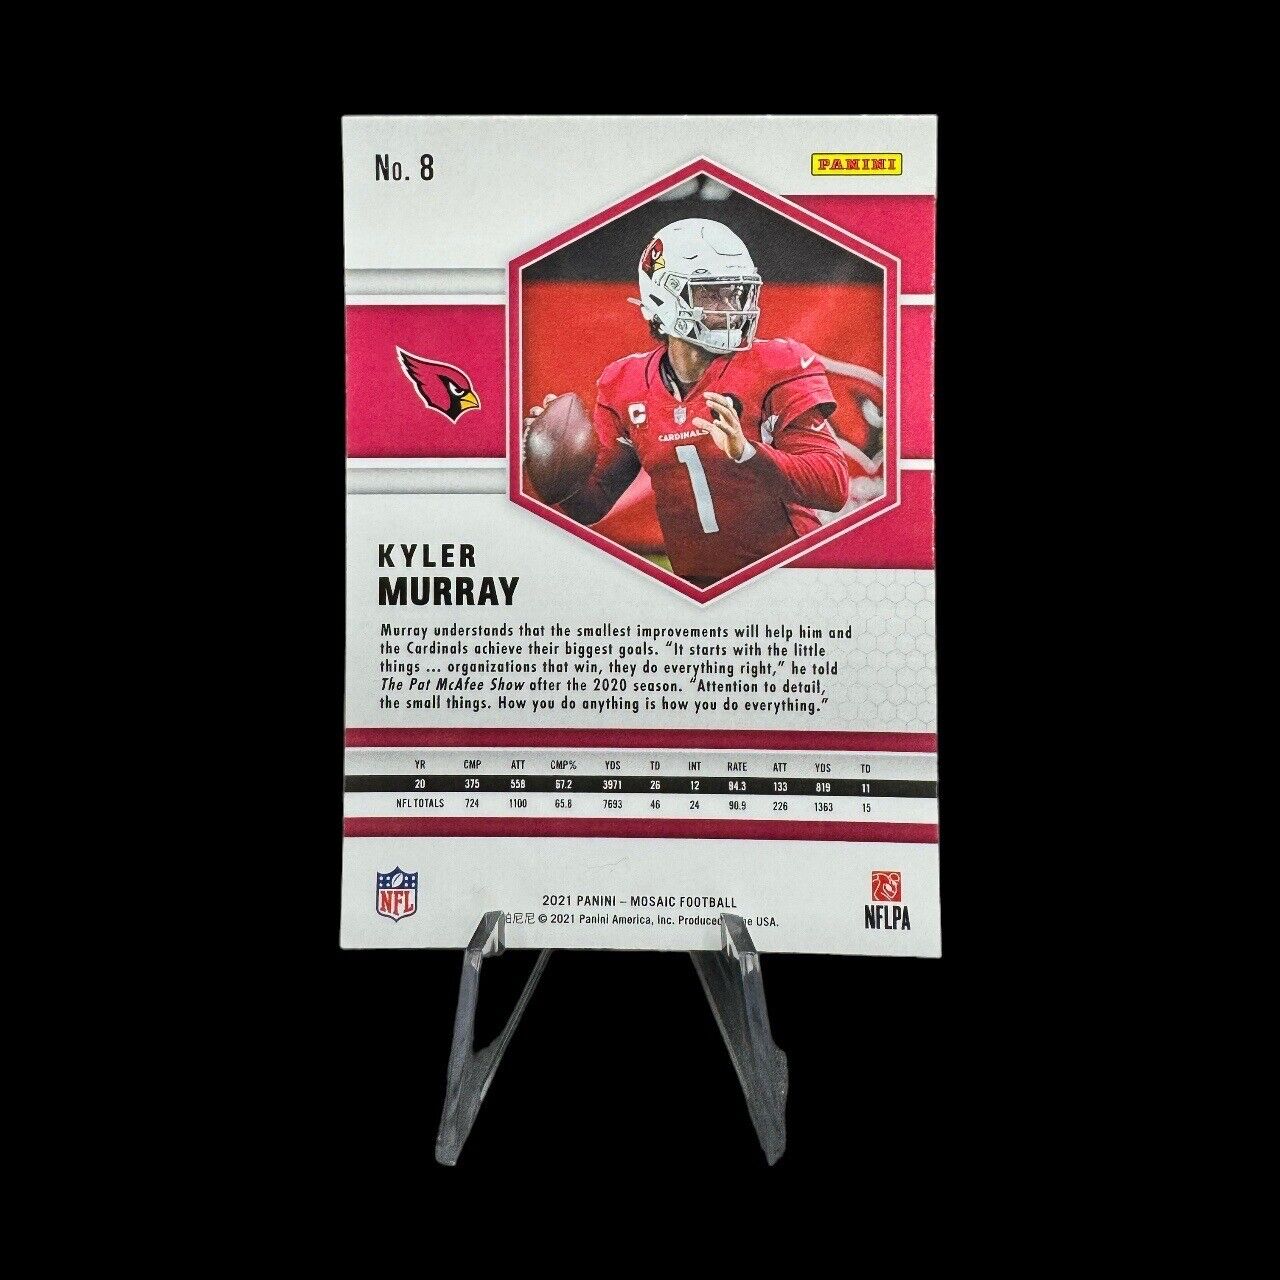 2021 Panini Mosaic #8 Kyler Murray, Arizona Cardinals - Base Card